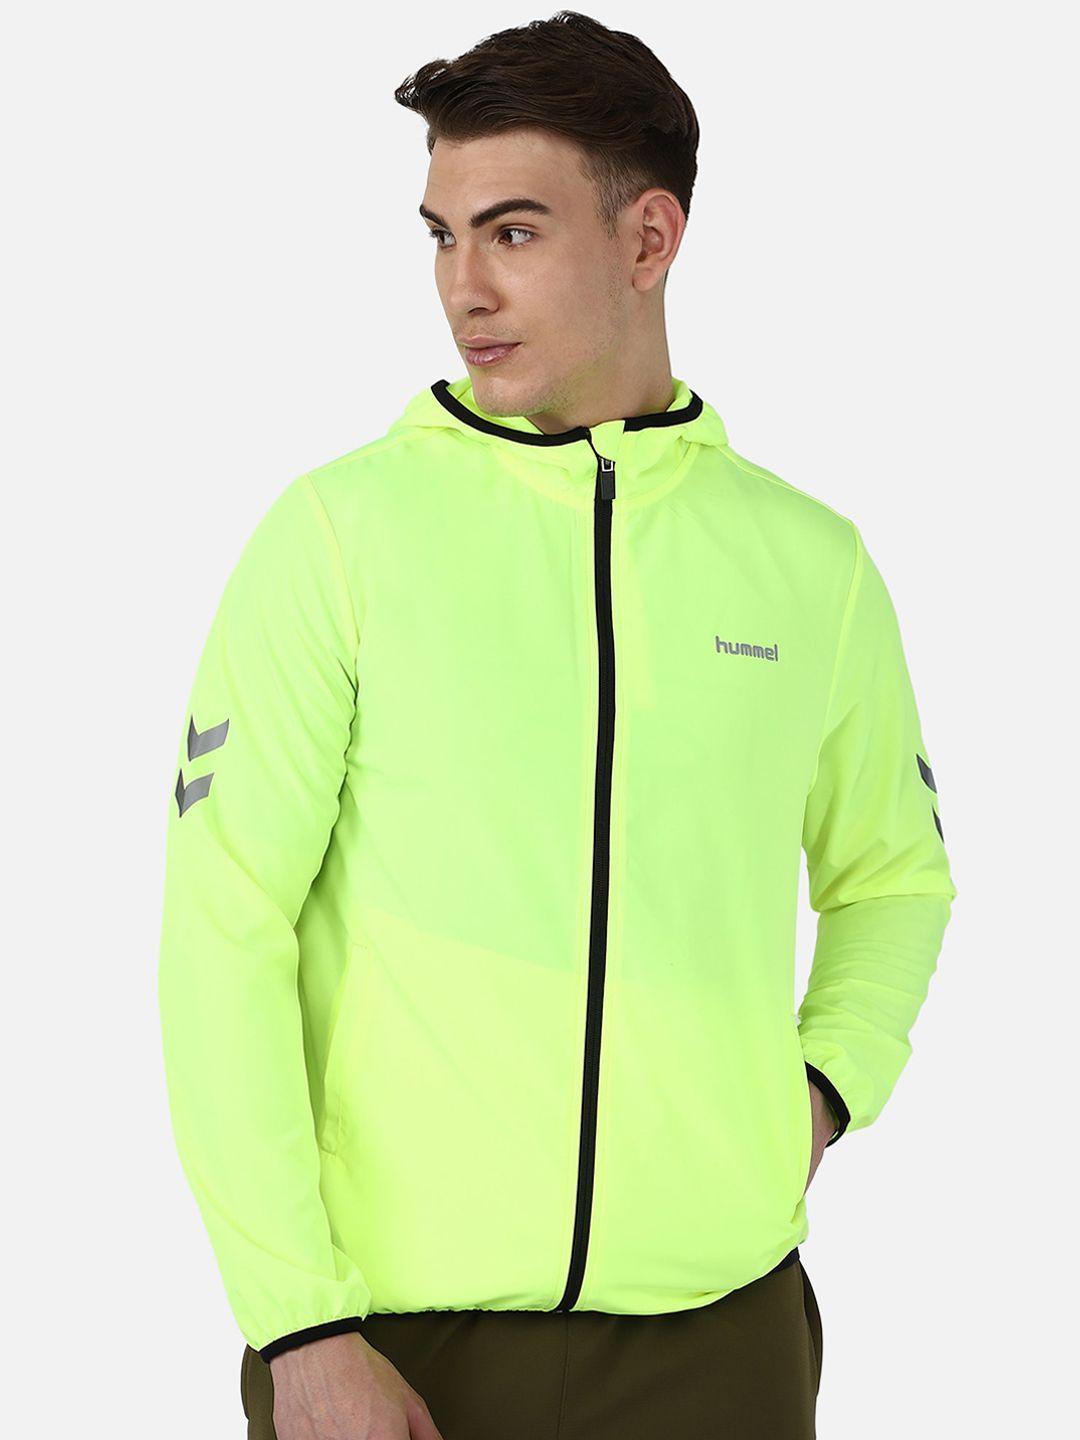 hummel men green lightweight outdoor sporty jacket